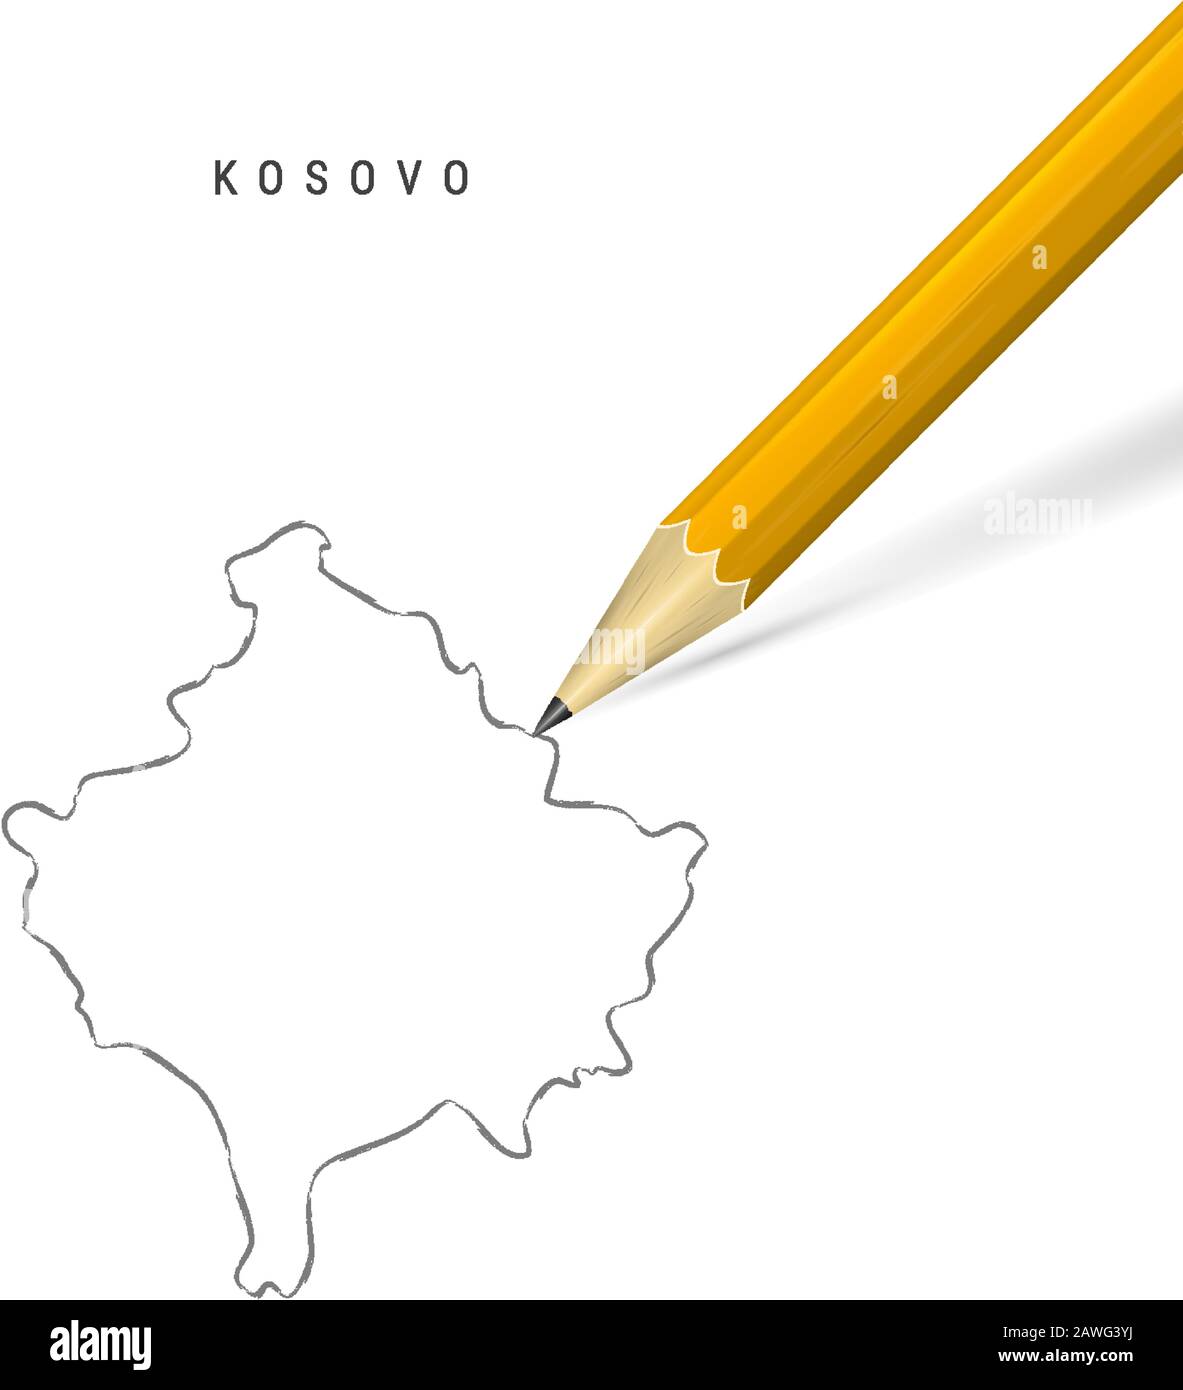 Kossovo a mano libera matita schizzo mappa contorno isolato su sfondo bianco. Mappa vettoriale vuota disegnata a mano del Kosovo. Matita 3D realistica con ombra morbida. Illustrazione Vettoriale